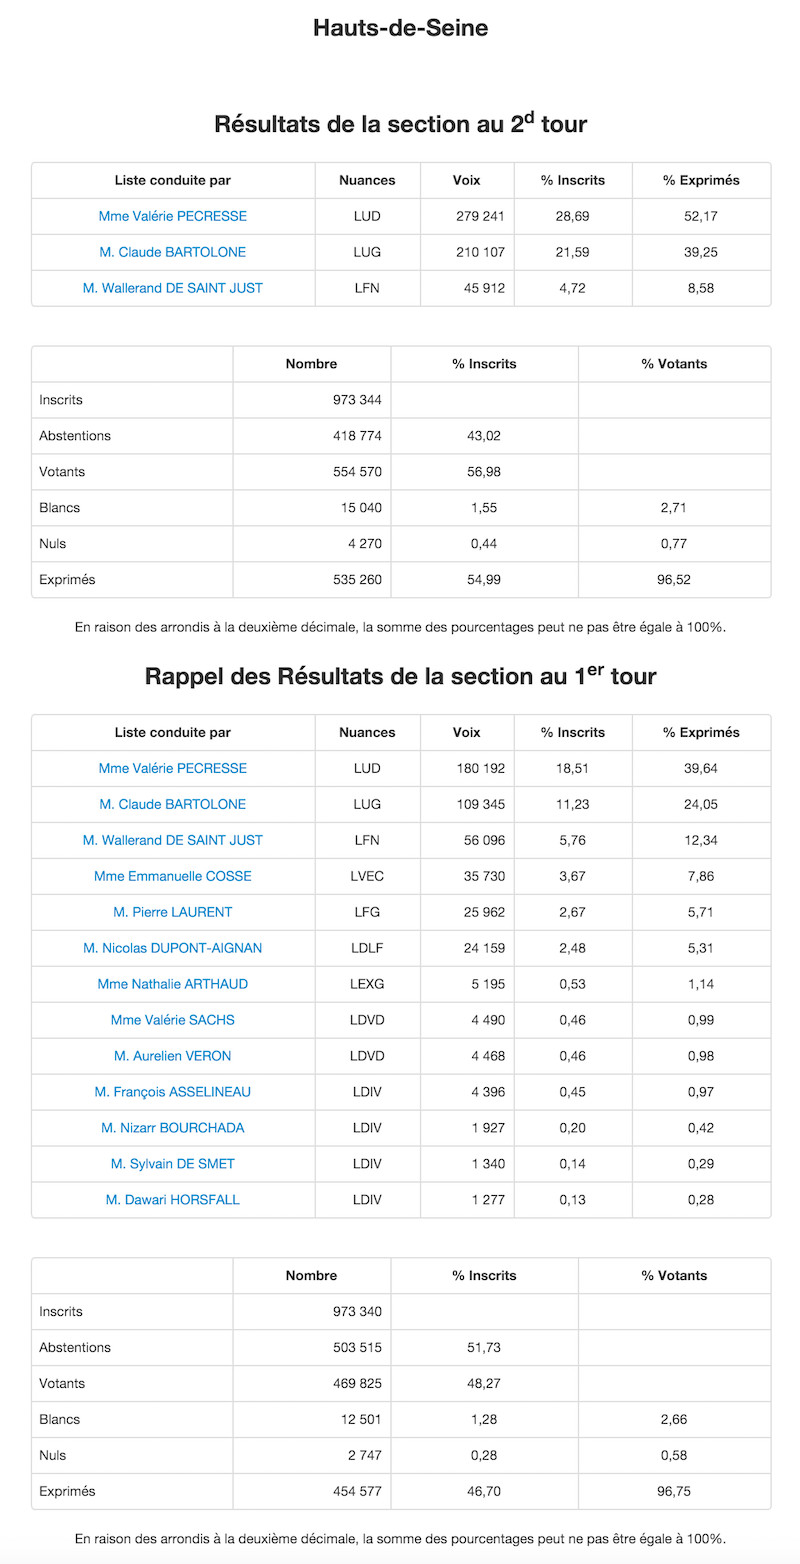 Régionales 2015 - 2nd et 1er tour dans les Hauts de Seine © Ministère de l'Intérieur